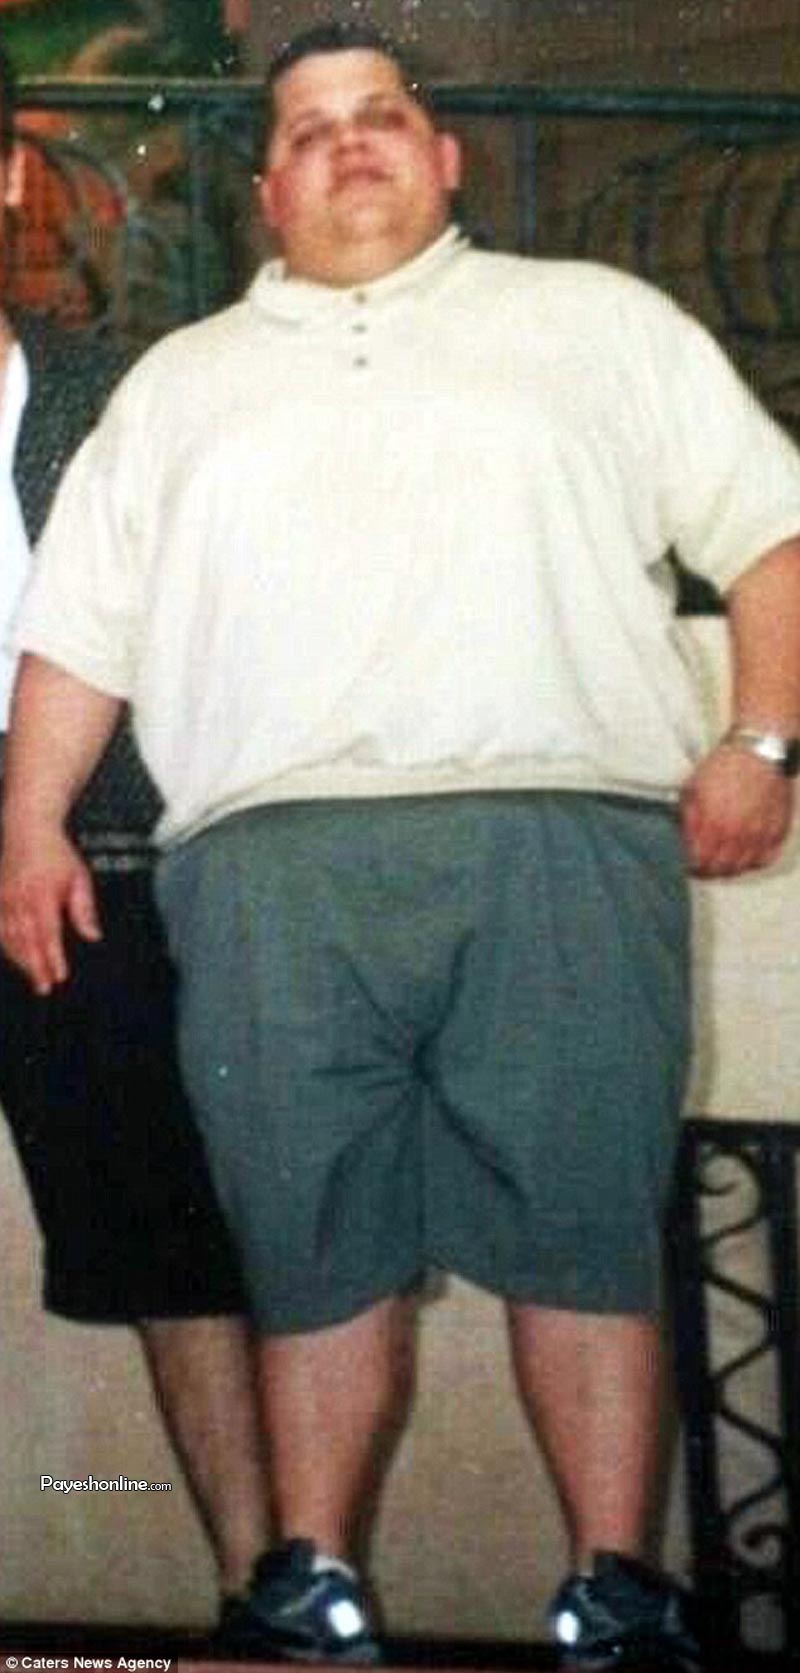 مرد امریکایی که 90 کیلو وزن کم کرد+تصاویر